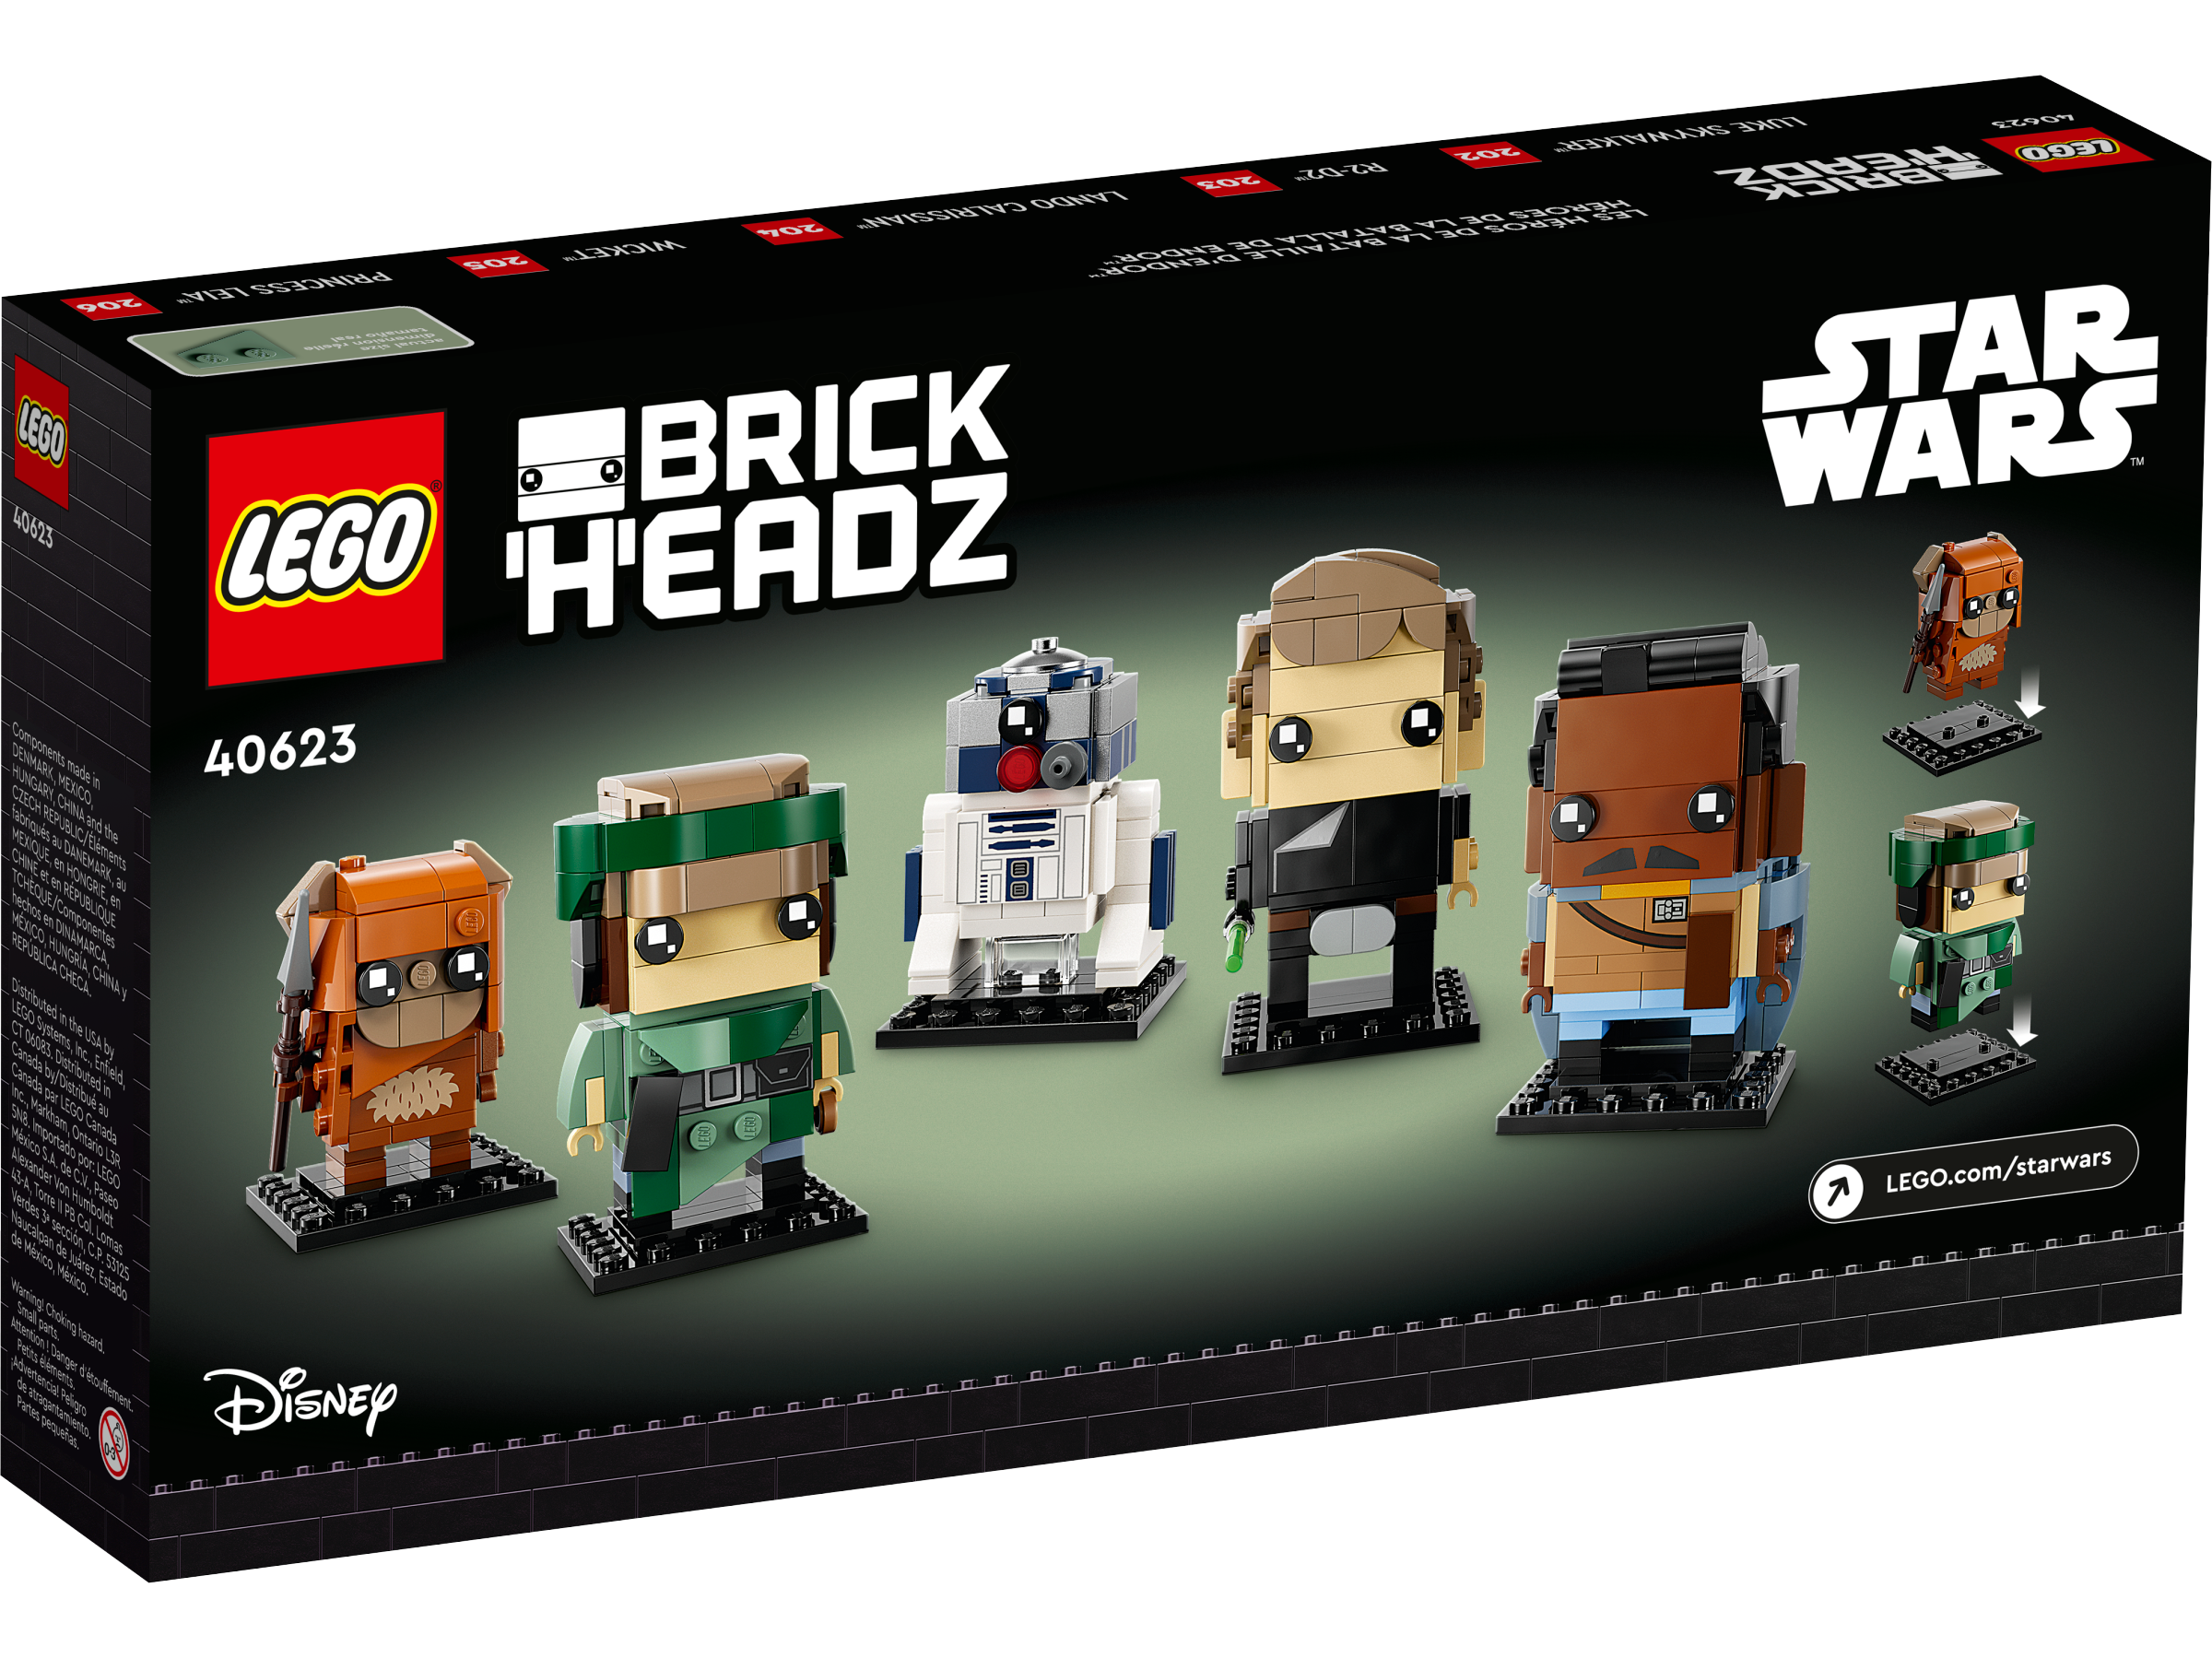 LEGO Star Wars Battle of Endor Heroes revealed